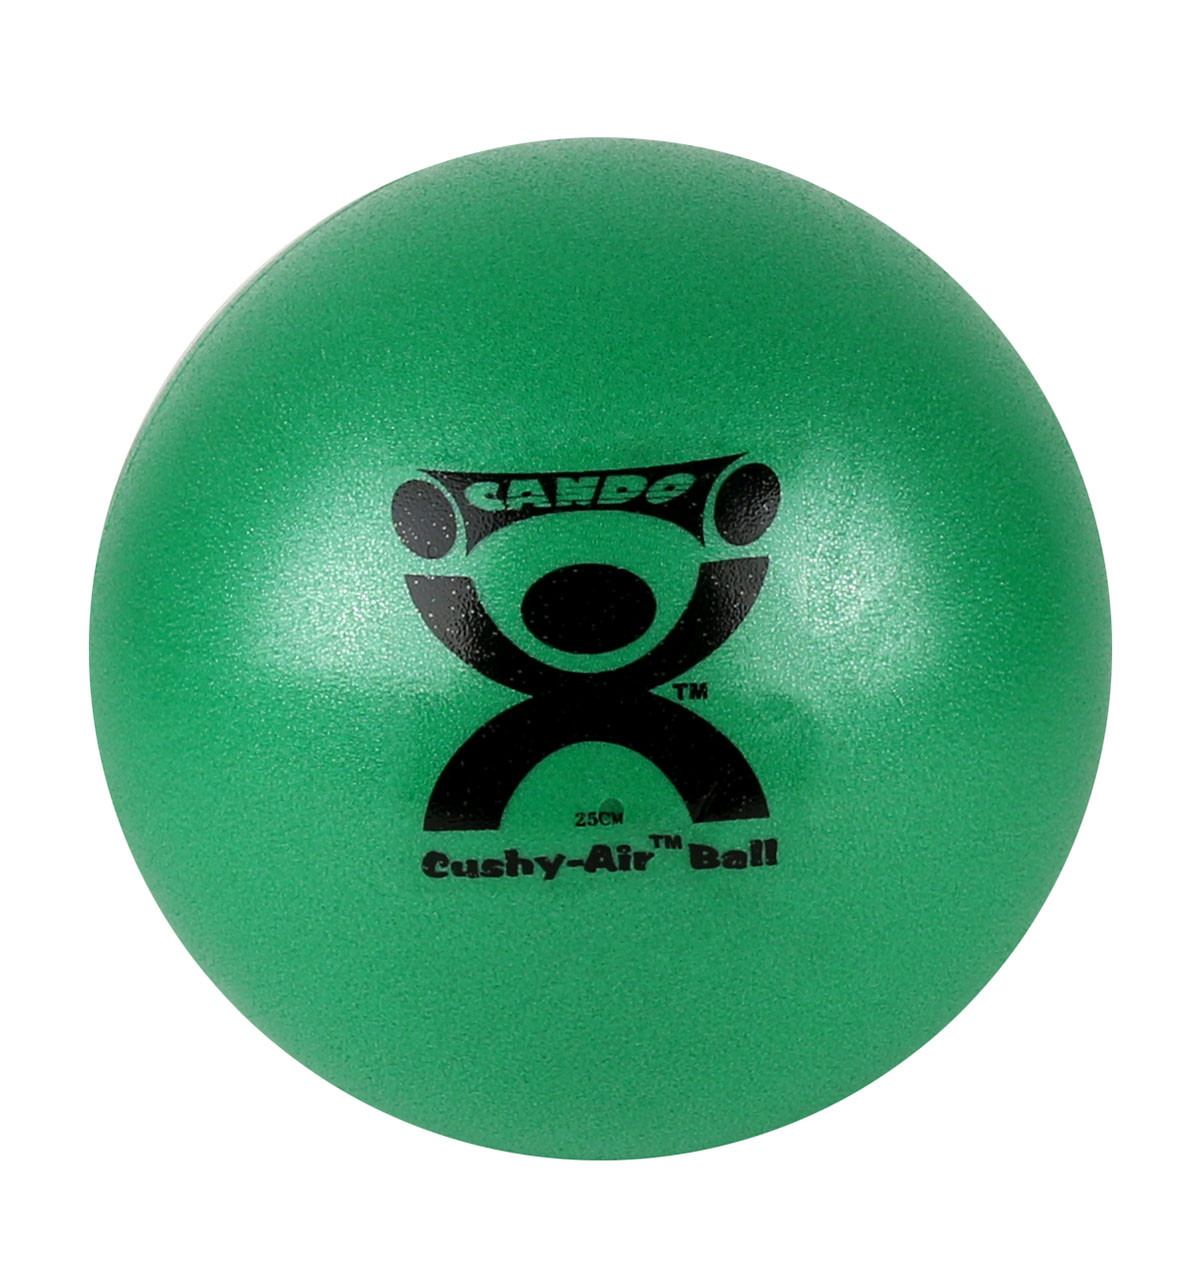 CanDo¨ Cushy-Air¨ Hand Ball - Green - 10" (25 cm)